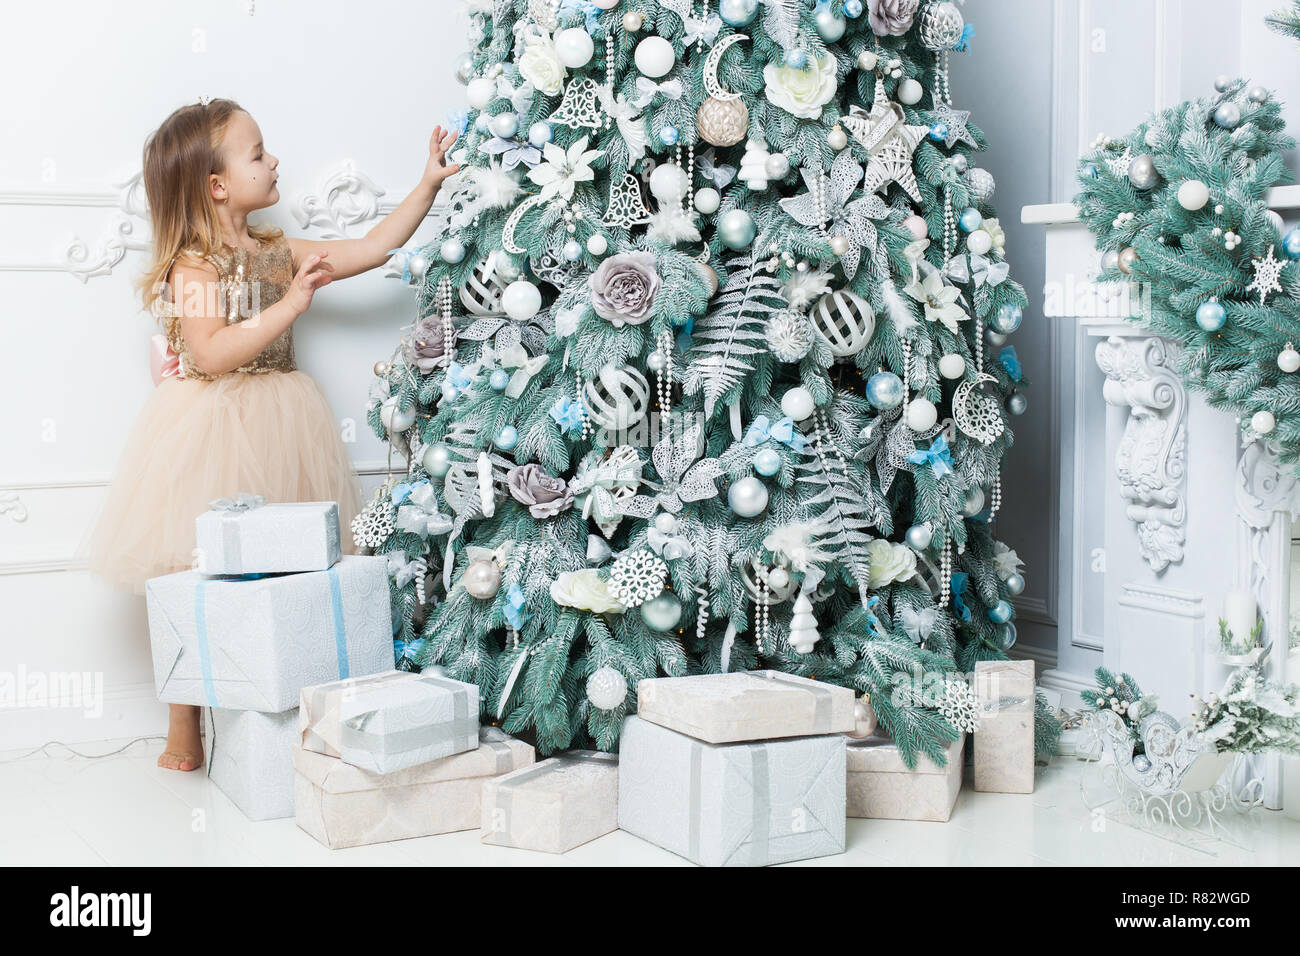 Kleines Mädchen in einem schönen Kleid hängt, Dekorationen auf den Weihnachtsbaum. Stockfoto